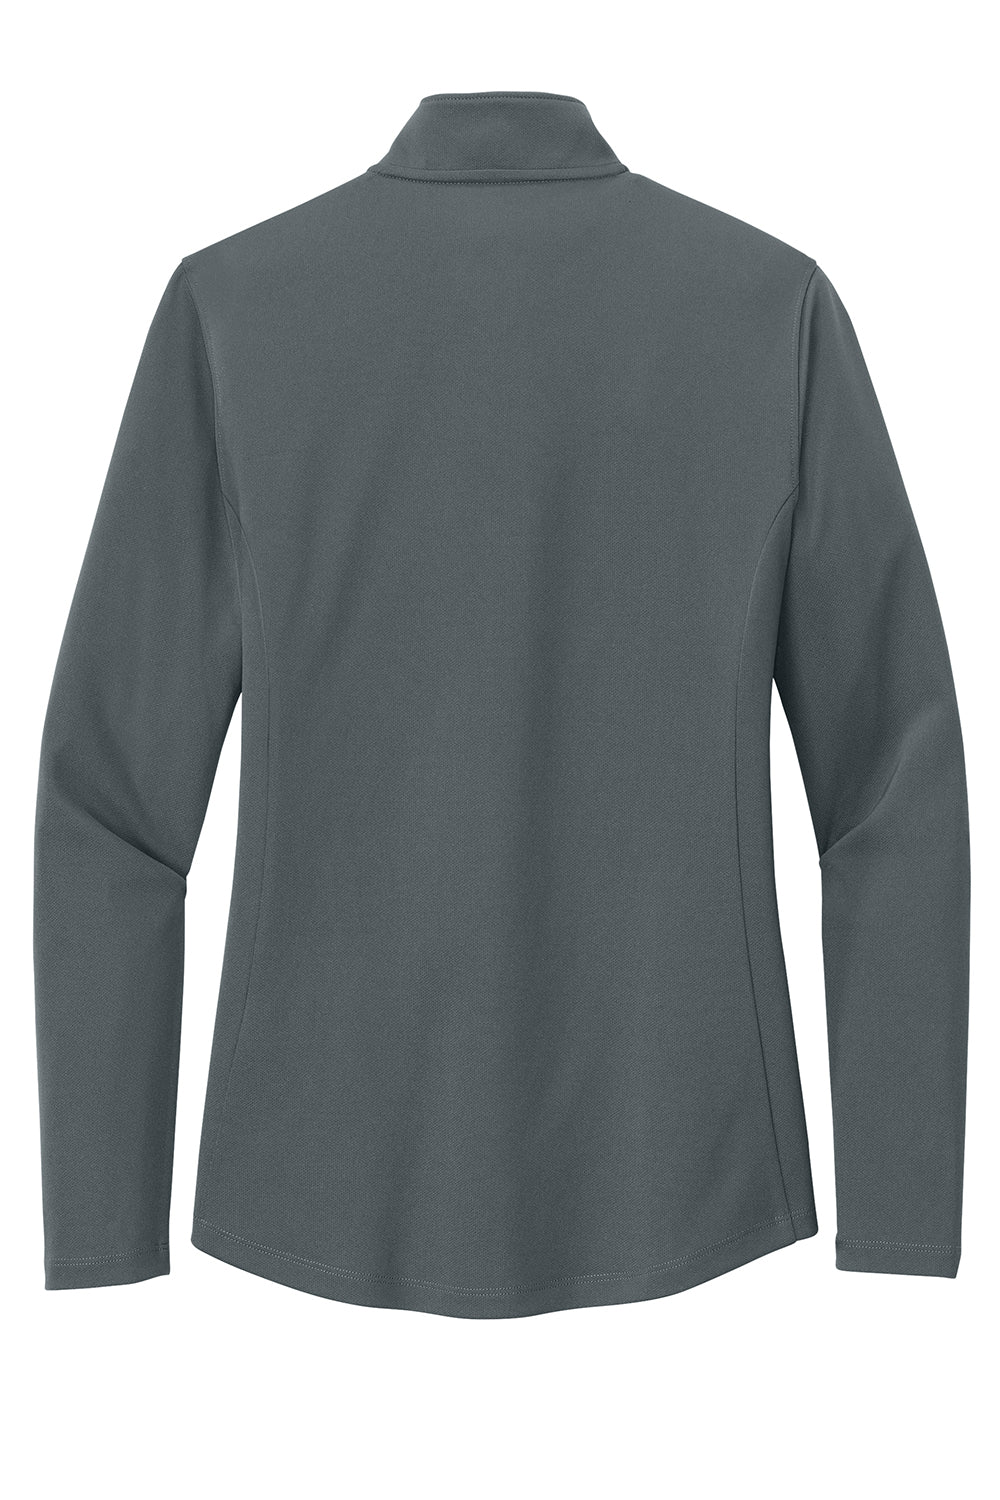 Port Authority LK112 Womens Dry Zone UV Micro Mesh 1/4 Zip Sweatshirt Graphite Grey Flat Back